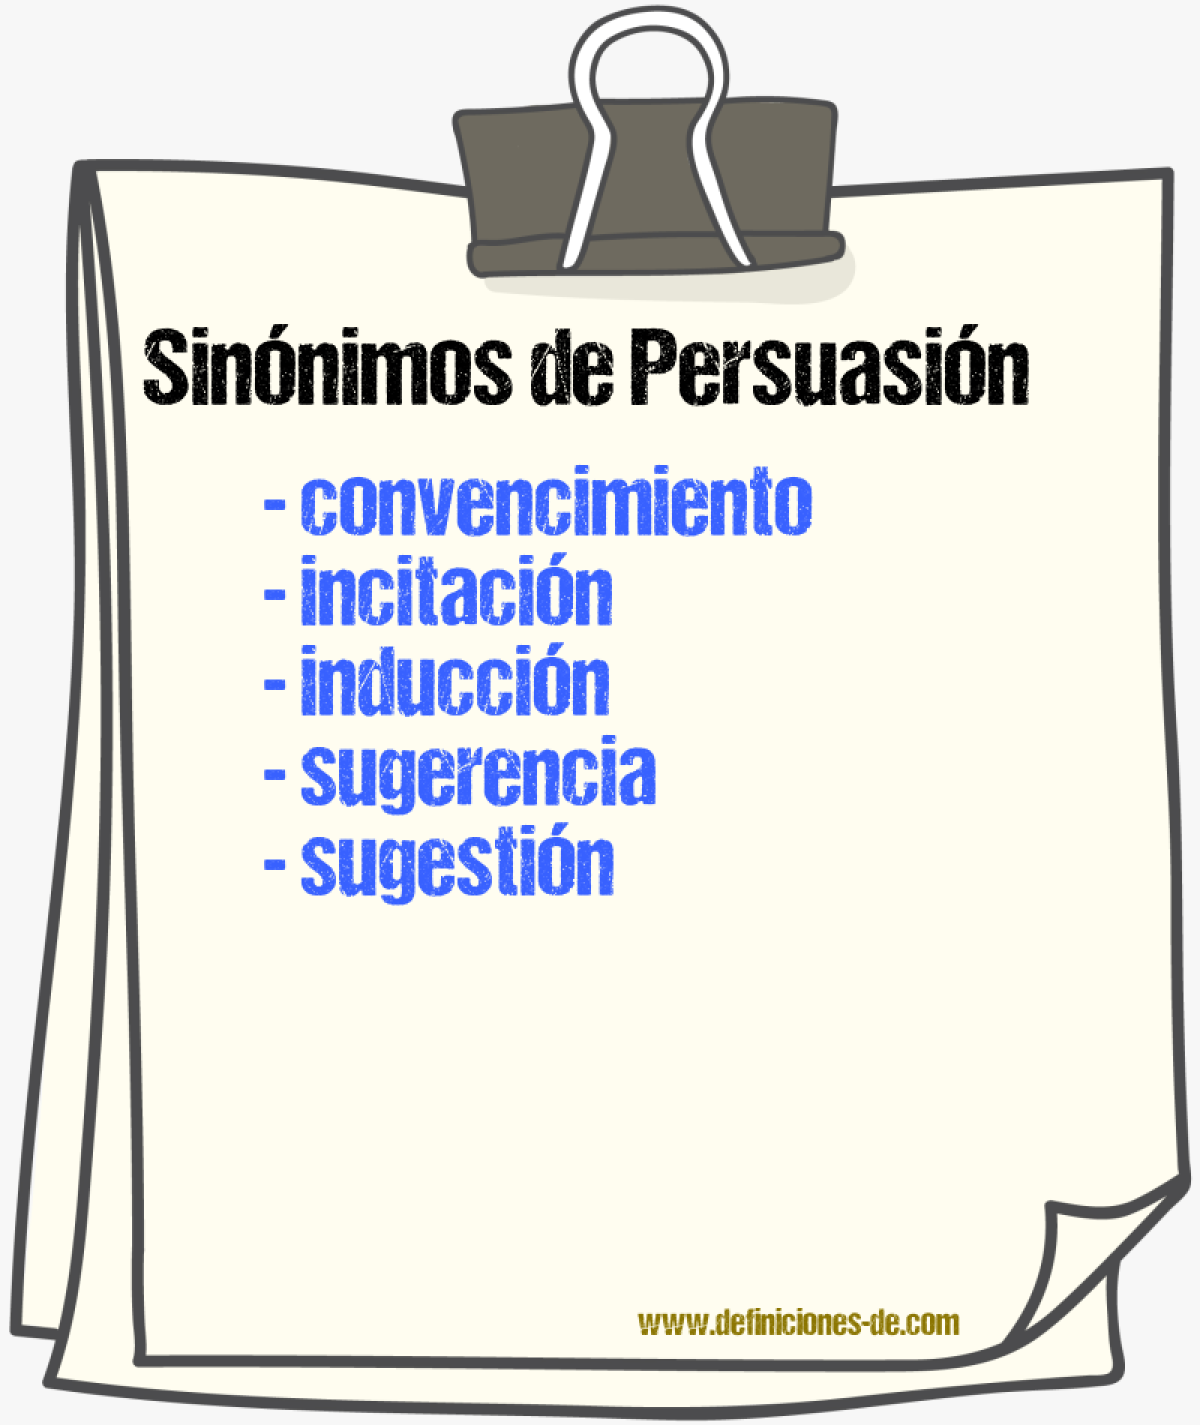 Sinónimos de persuasión